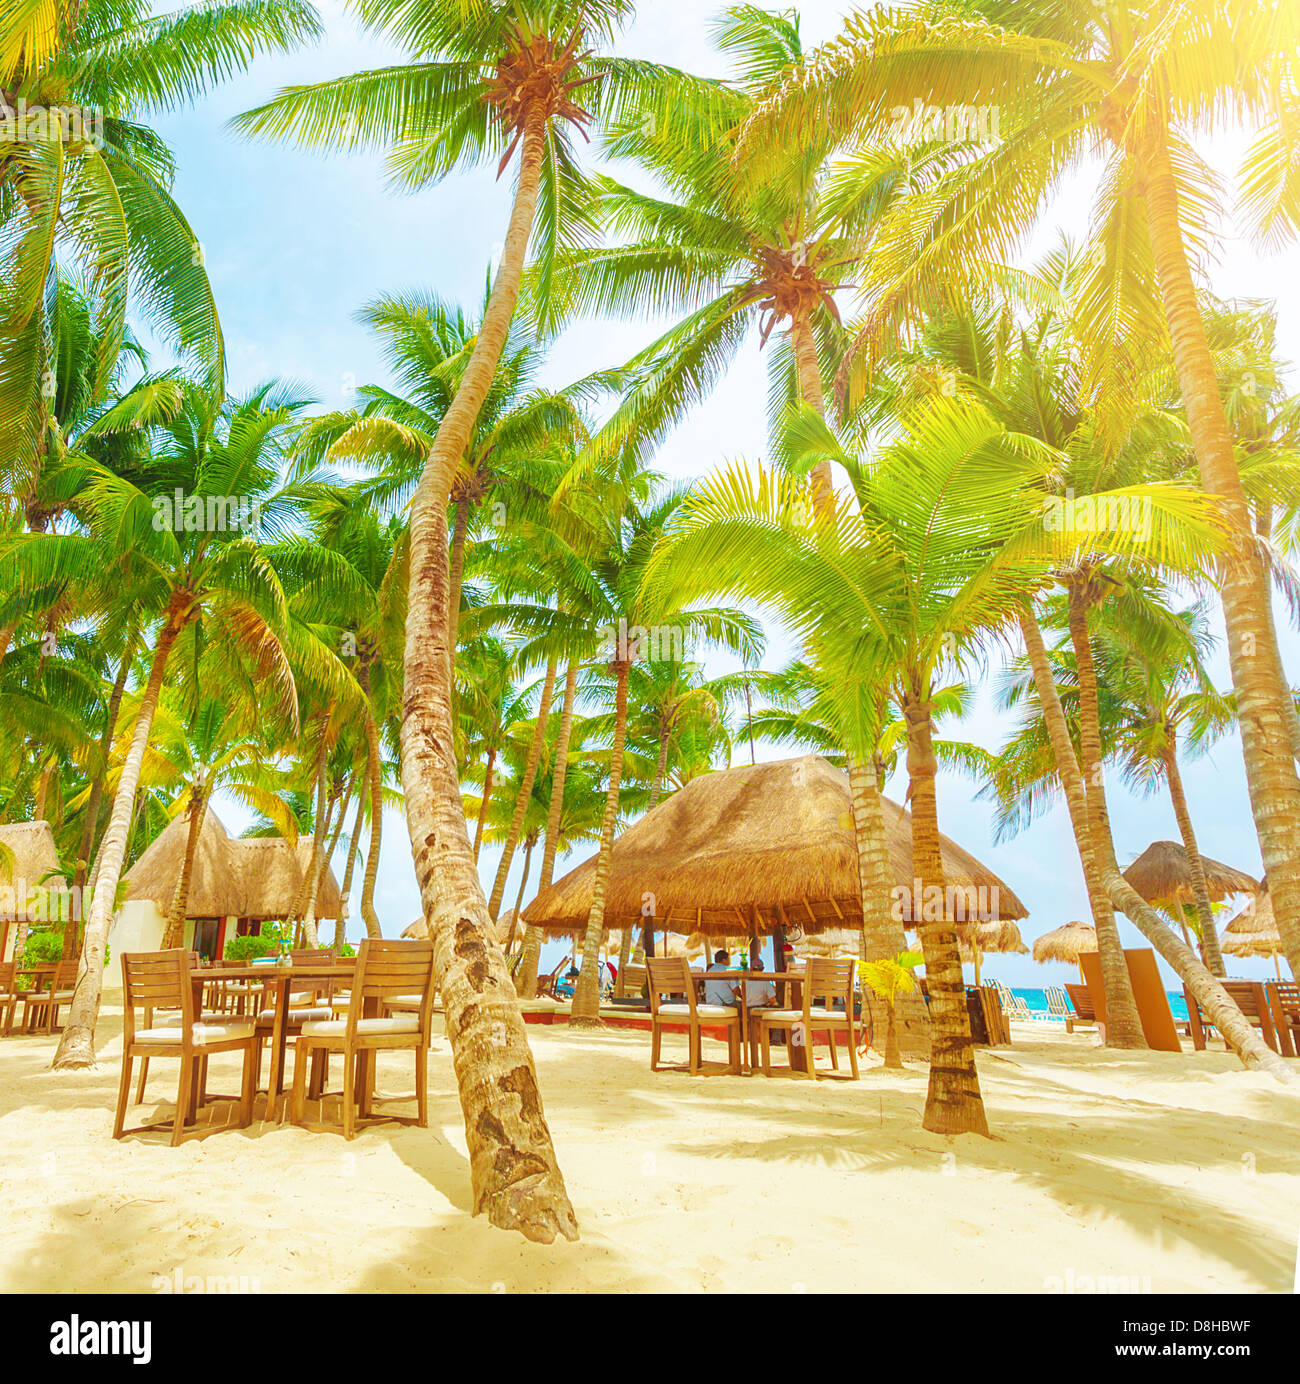 Romantico ristorante sulla spiaggia tropicale, giornata di sole, palme, Playa del Carmen, Nord America, day spa resort di lusso Foto Stock